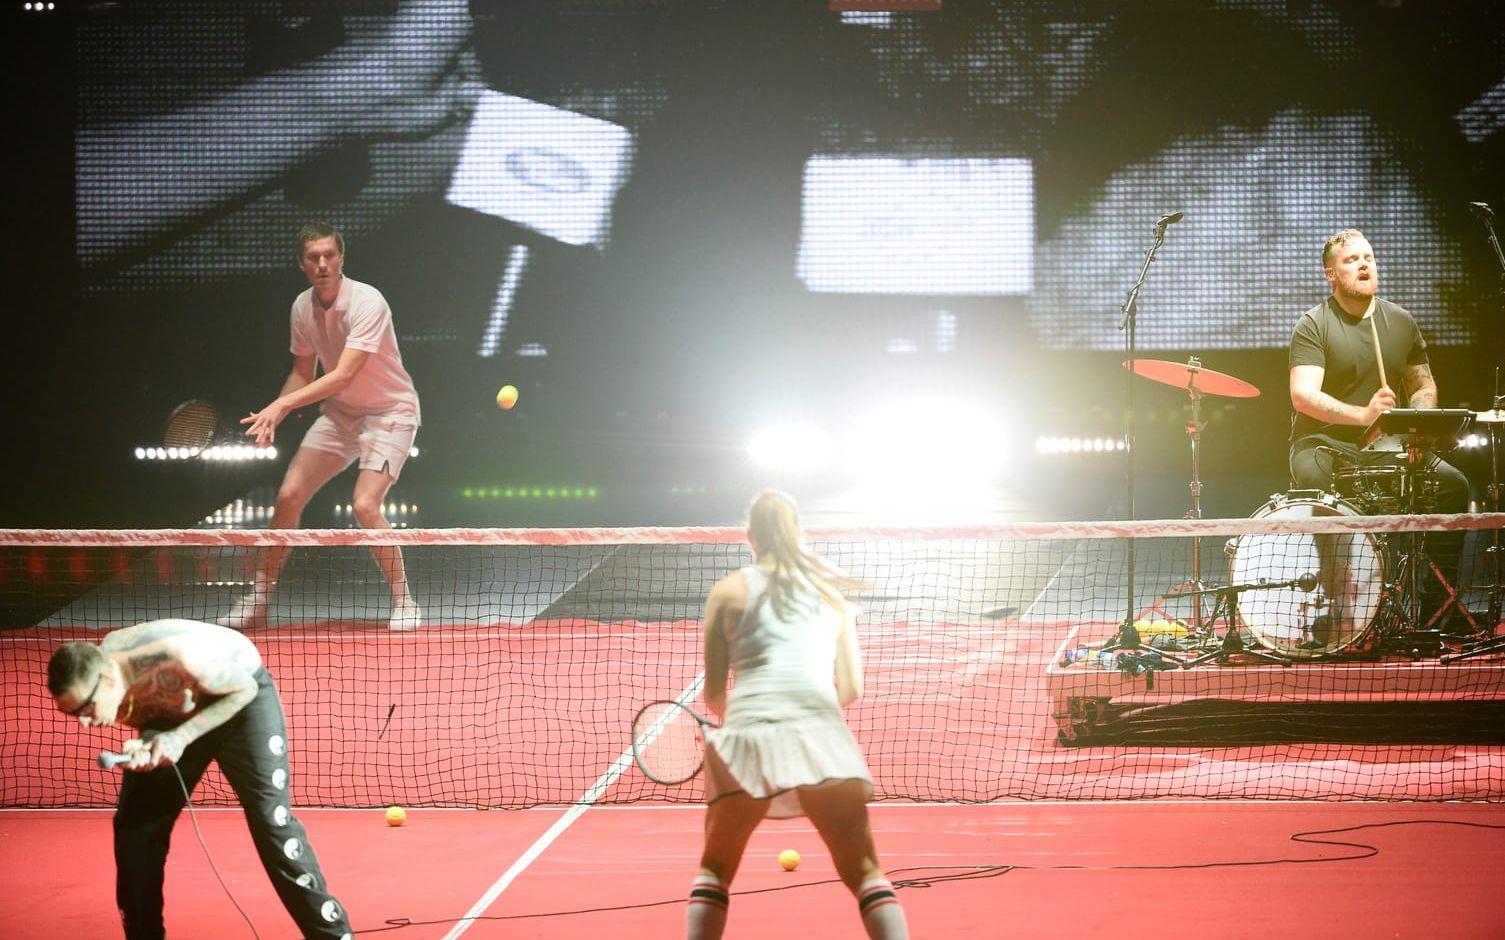 Viagra Boys rullade ut en tennisbana för att publiken skulle komma i stämning under deras låt Sports.